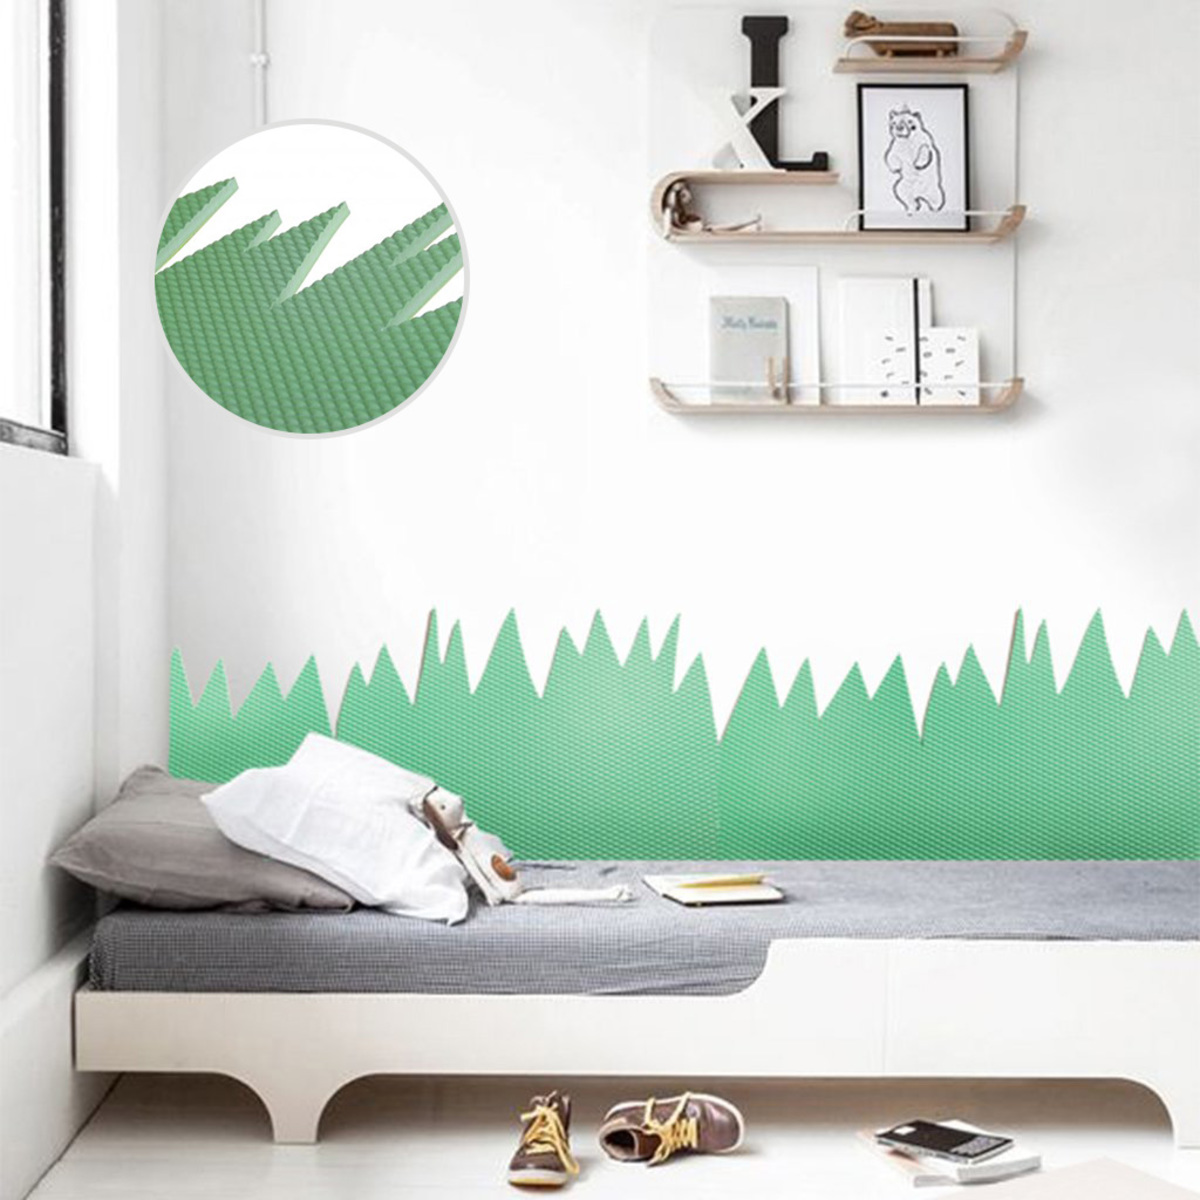 Schaumstoffschutz für die Wand hinter dem Bett Mountains - grün 